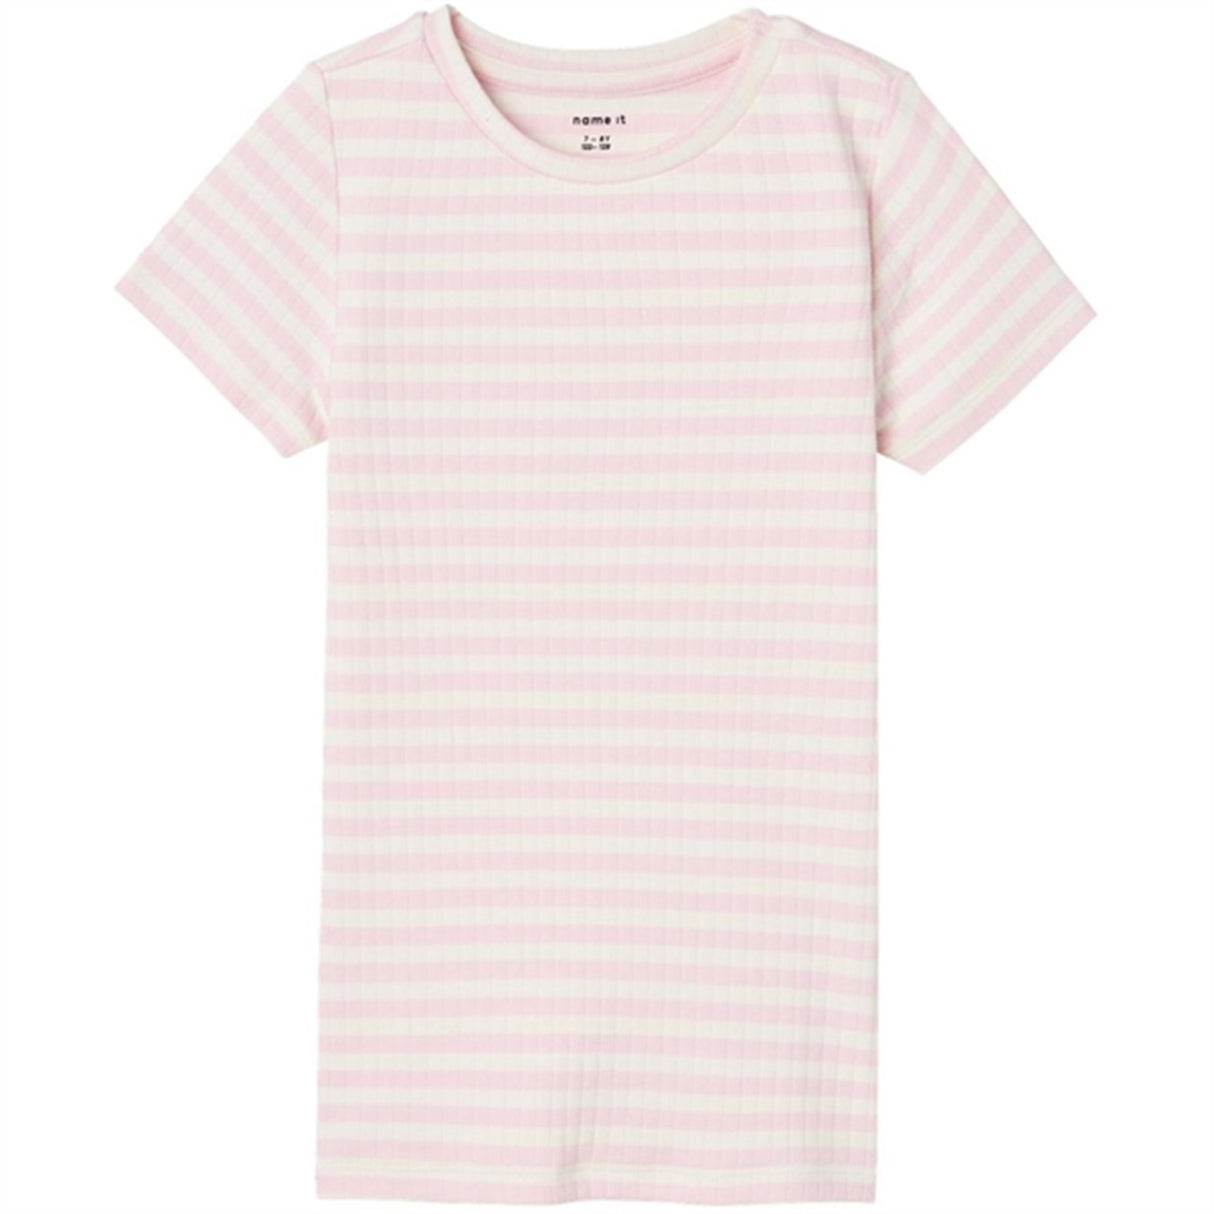 Name it Parfait Pink Suraja T-Shirt Noos